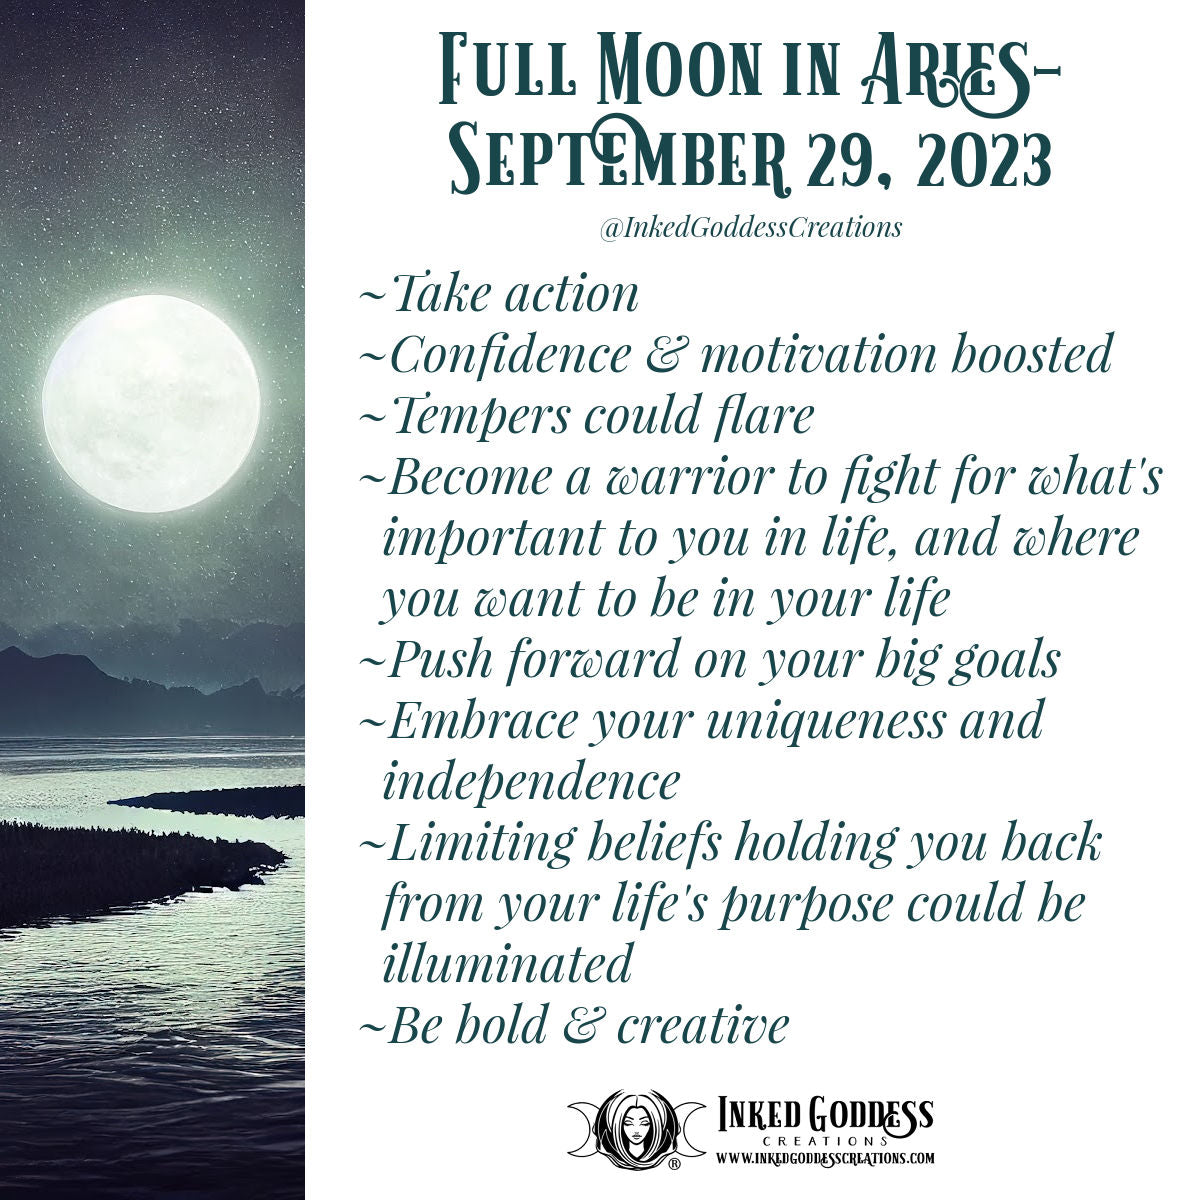 Full Moon in Aries- September 29, 2023